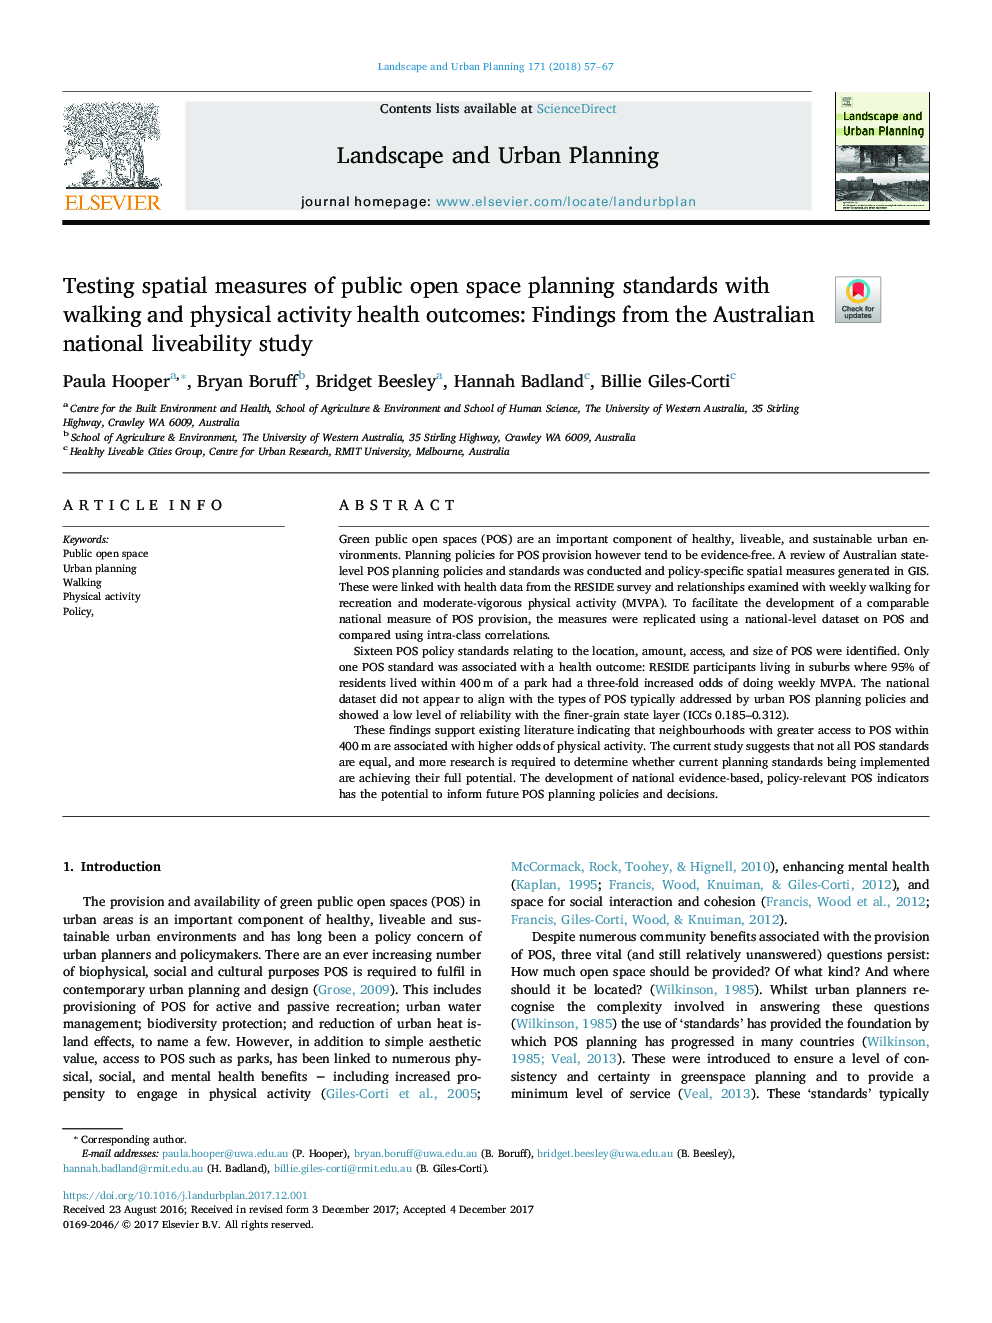 تست اندازه های فضایی استانداردهای برنامه ریزی فضای باز عمومی با نتایج سلامتی پیاده روی و فعالیت های جسمی: ​​یافته های مطالعه ملی زندگی استرالیا 